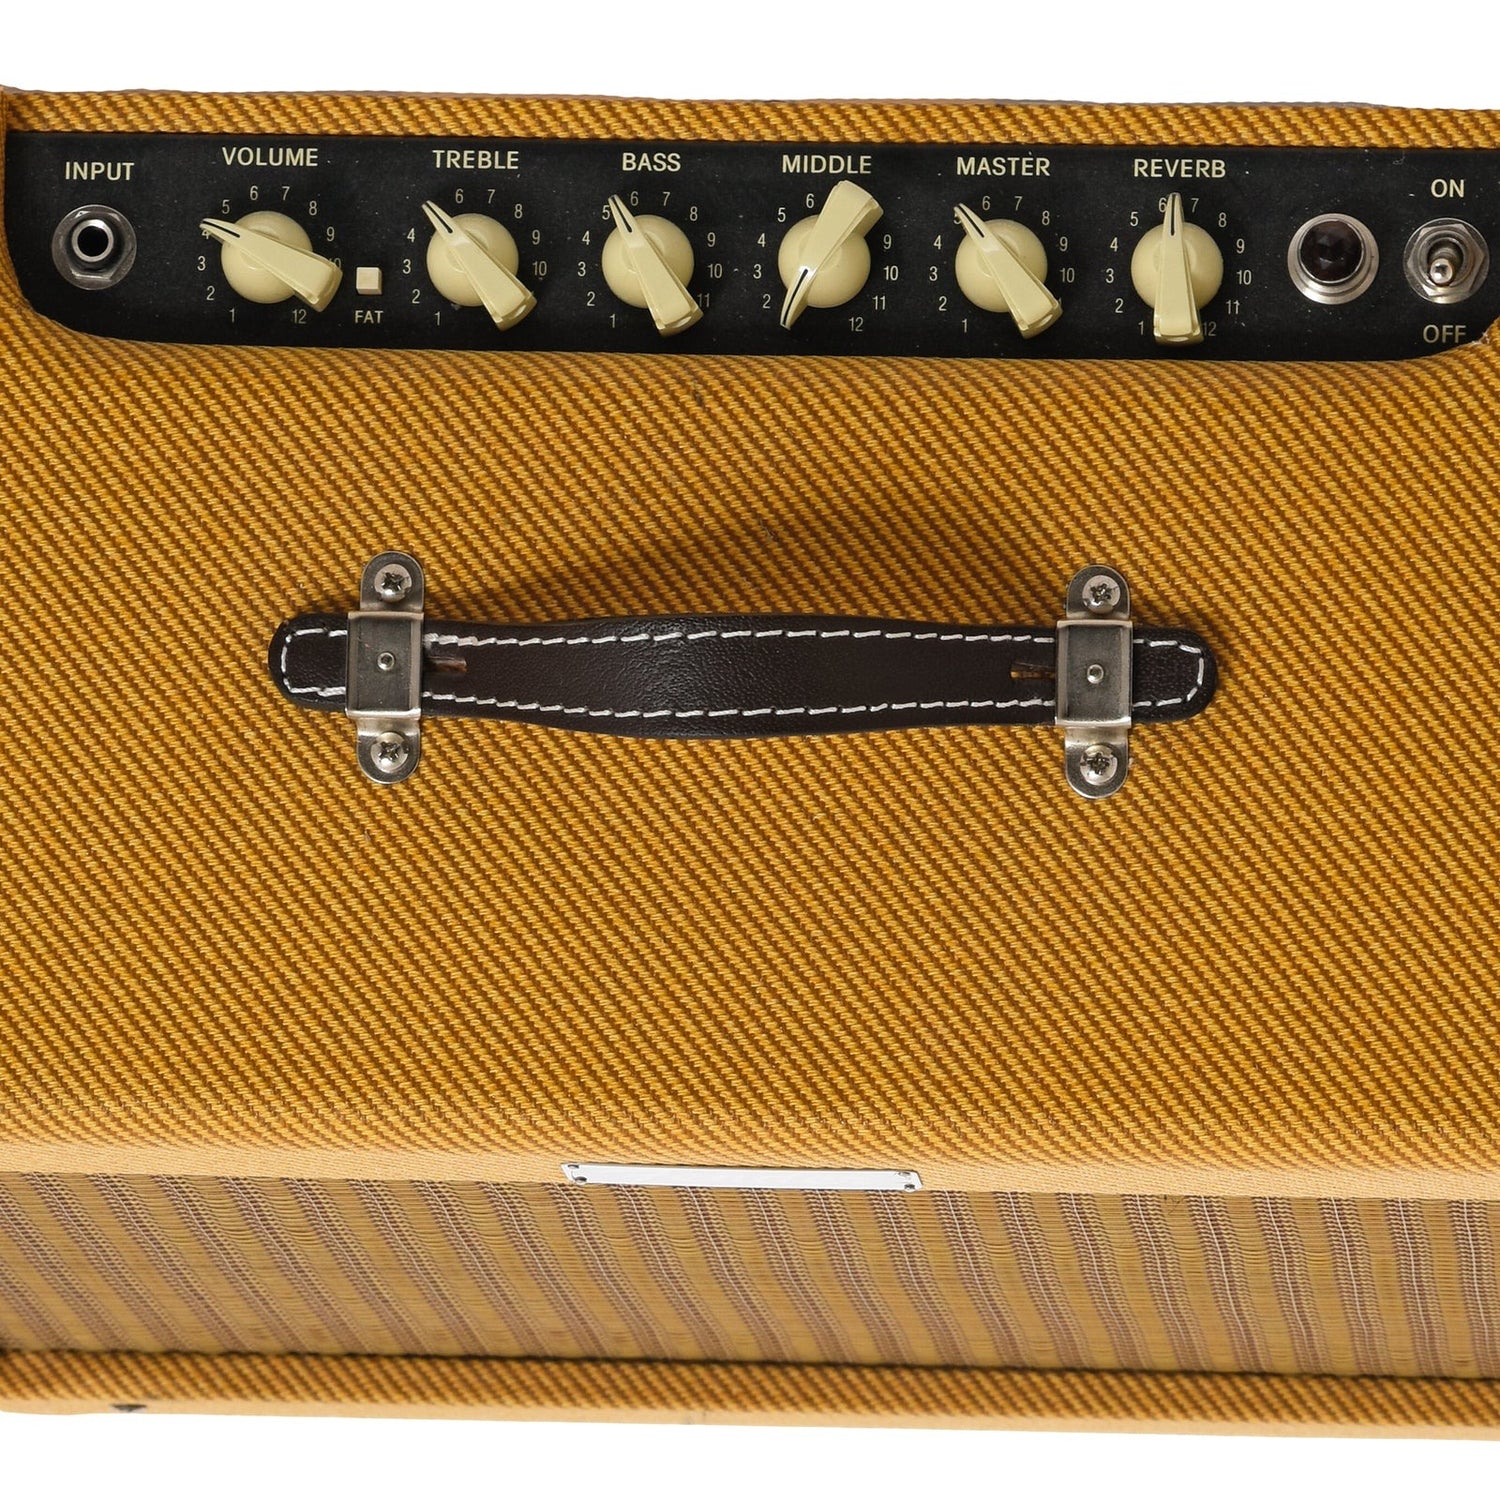 Controls of Fender Blues Jr. IV Tweed LTD Combo Amp